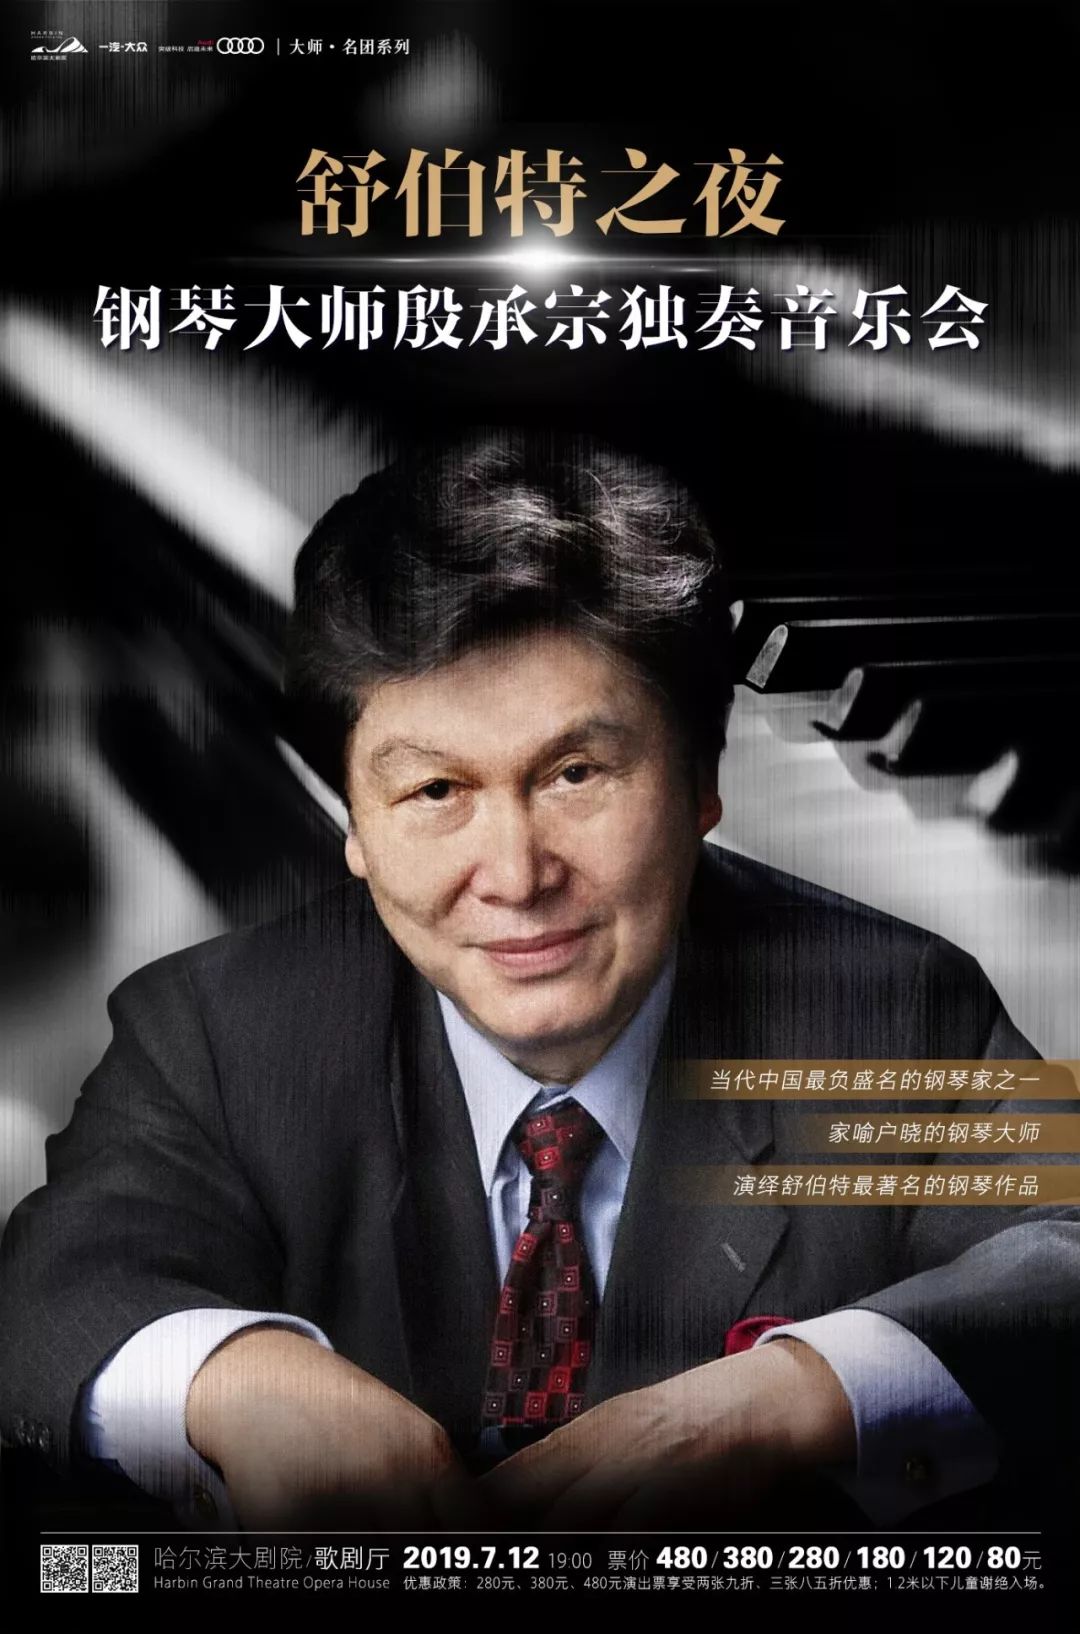 殷承宗新格罗夫音乐与音乐家辞典中仅有的四位中国音乐家之一